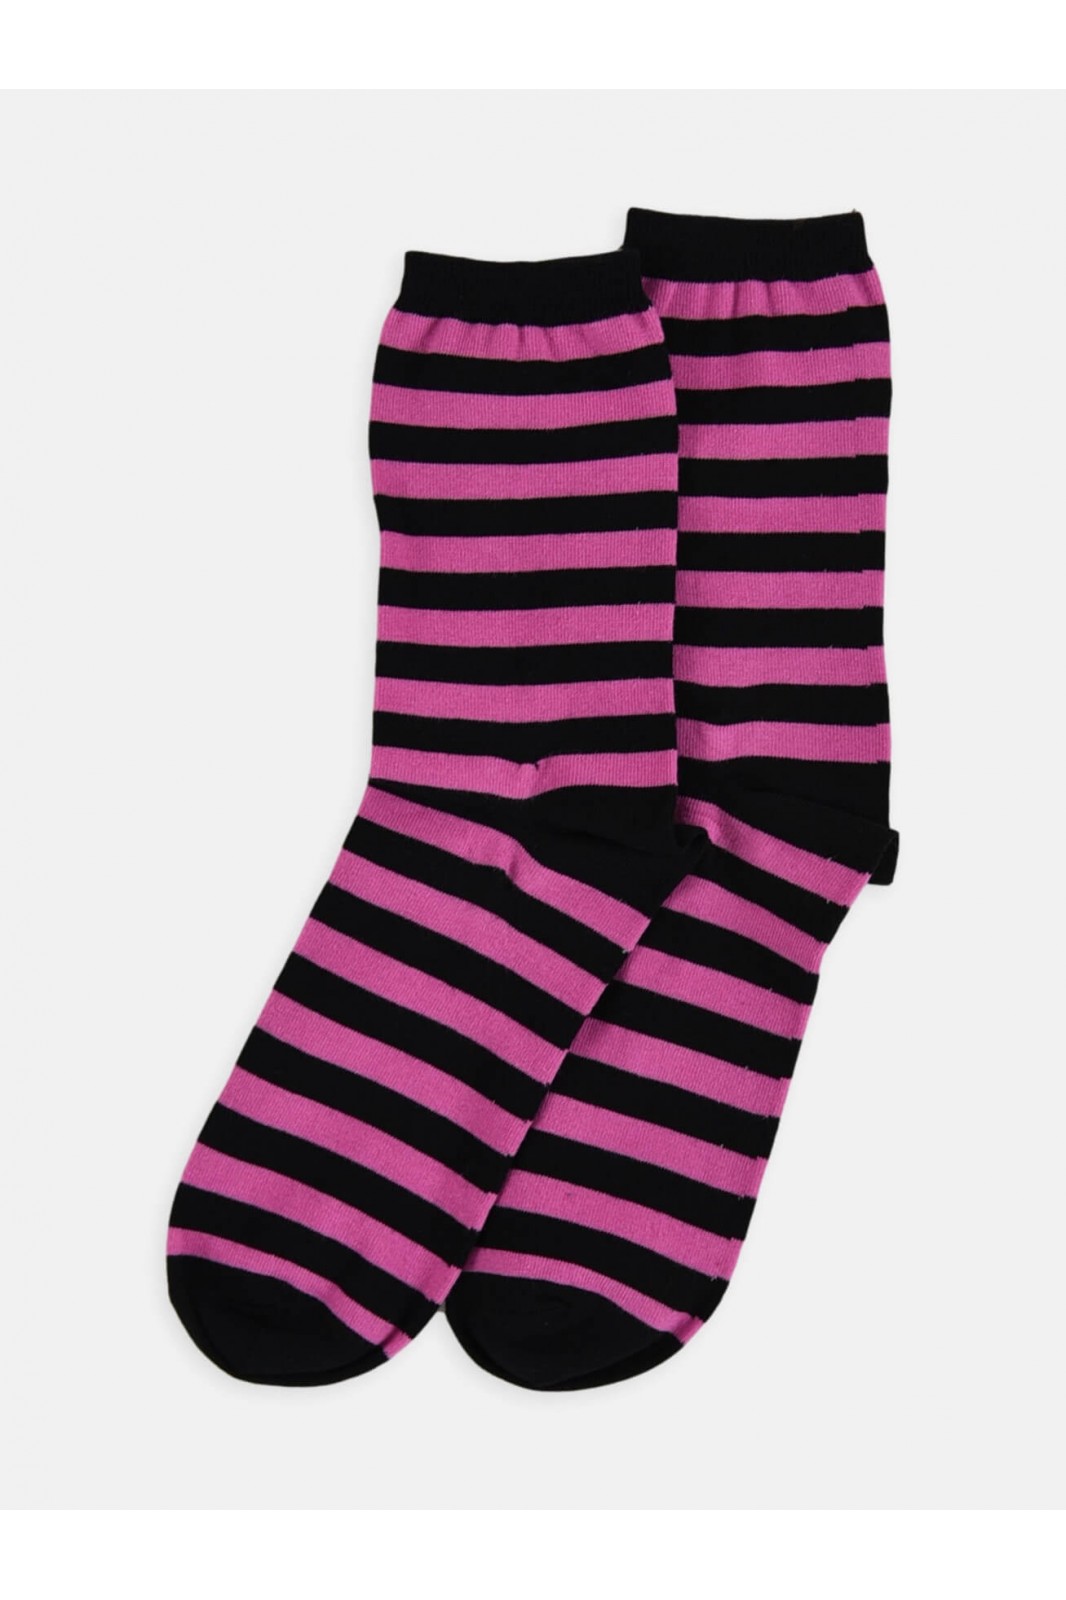 Womens socks LA DIVA Striped in 4 Shades